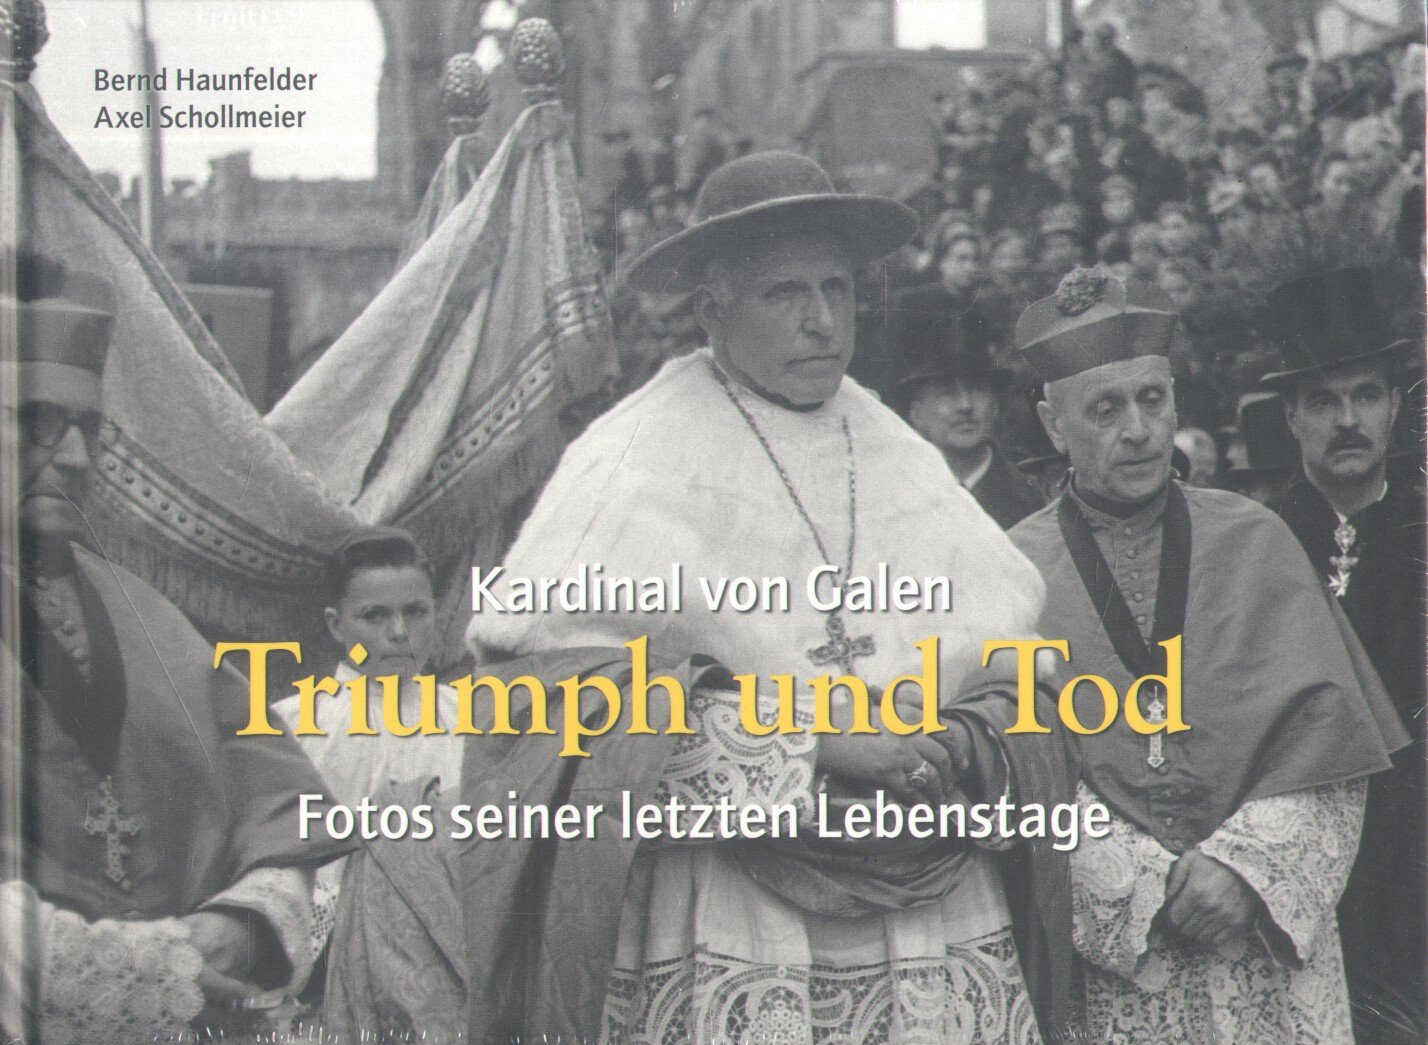 Haunfelder, Bernd / Schollmeier, Axel - Kardinal von Galen - Triumph und Tod (Fotos seiner letzten Lebenstage)